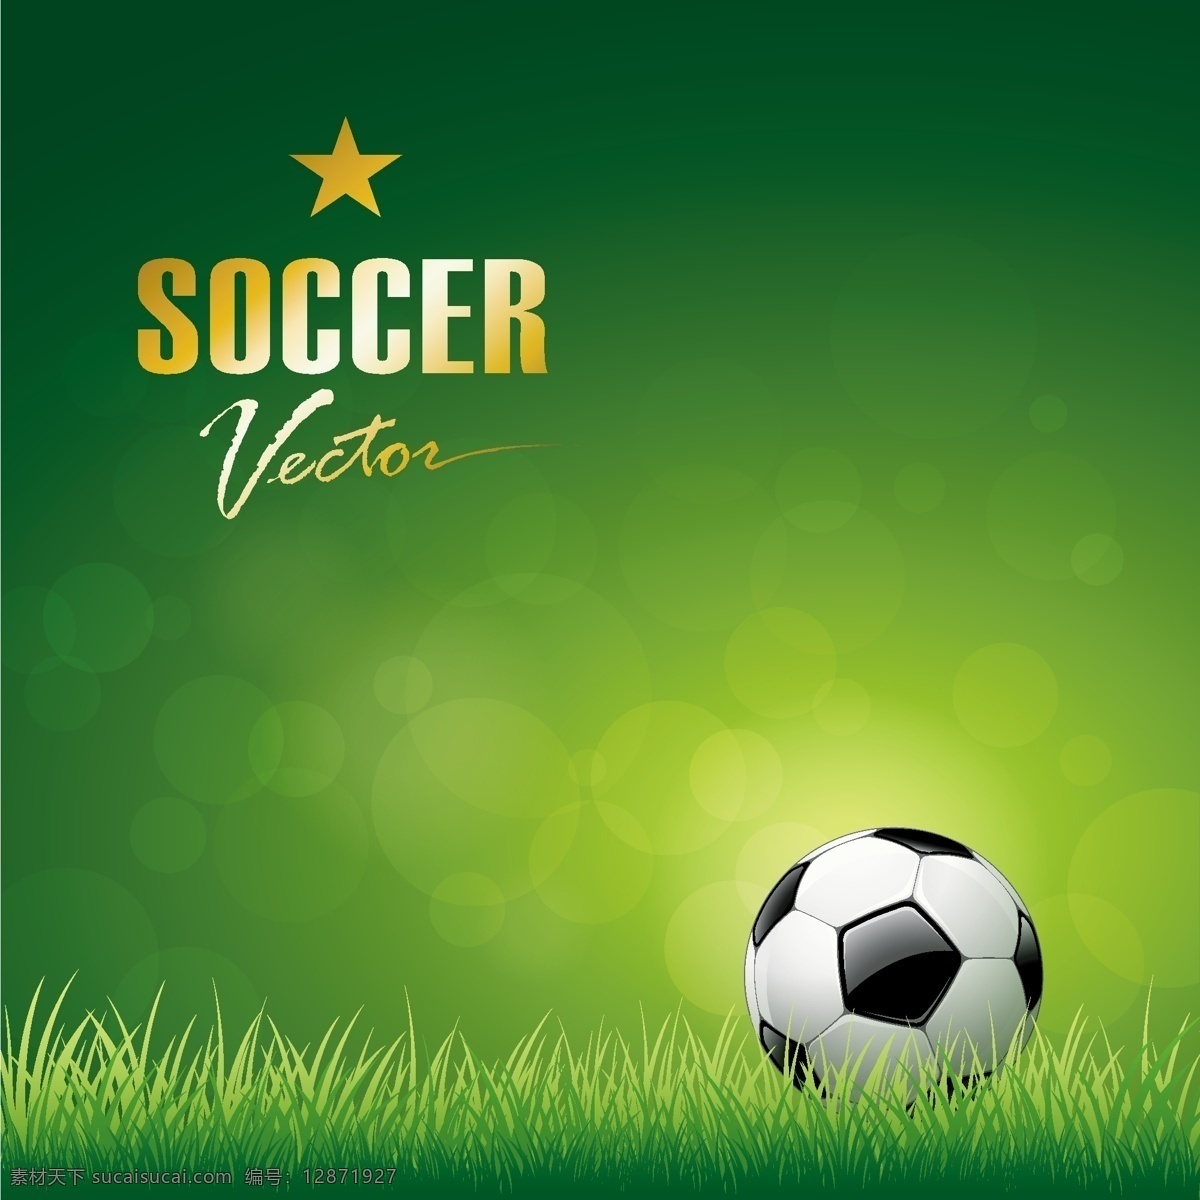 草地 上 足球 矢量 模板下载 世界杯 足球主题 五角星 体育运动 生活百科 矢量素材 绿色